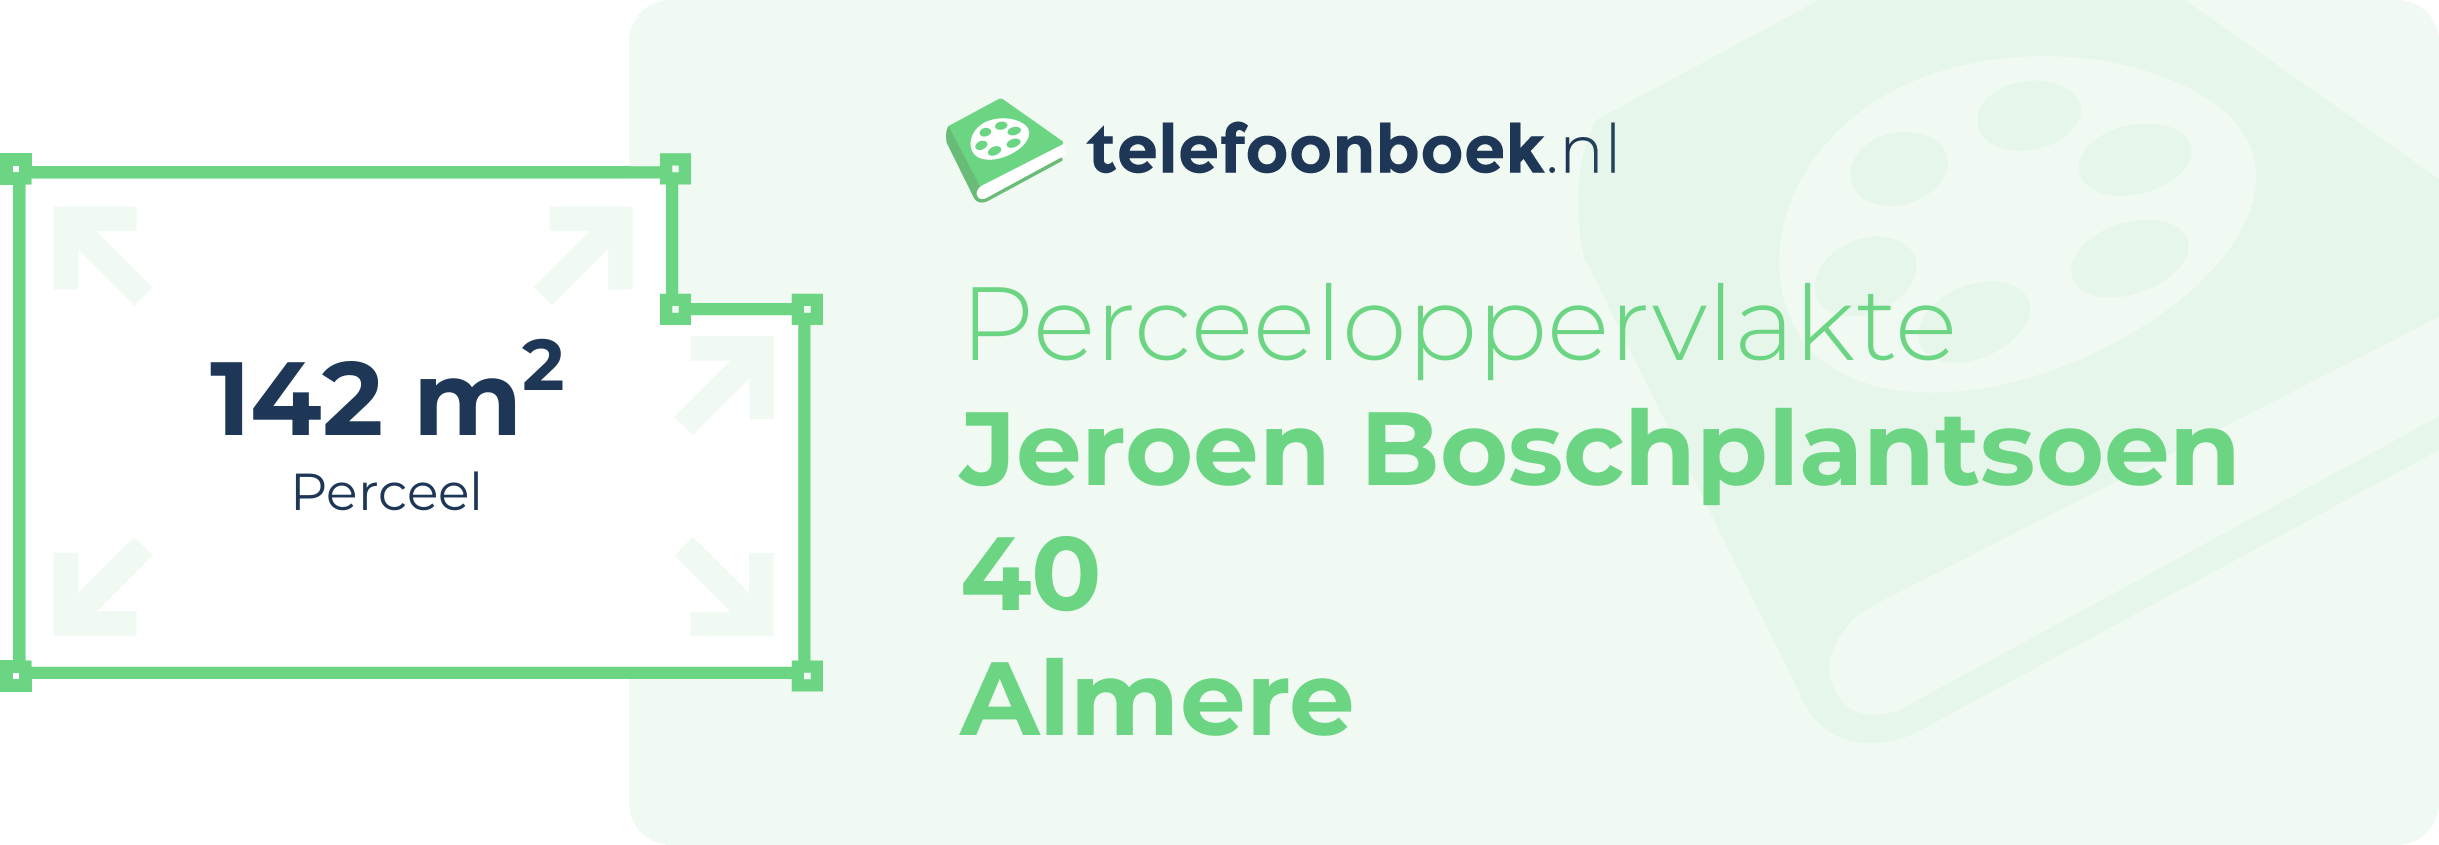 Perceeloppervlakte Jeroen Boschplantsoen 40 Almere